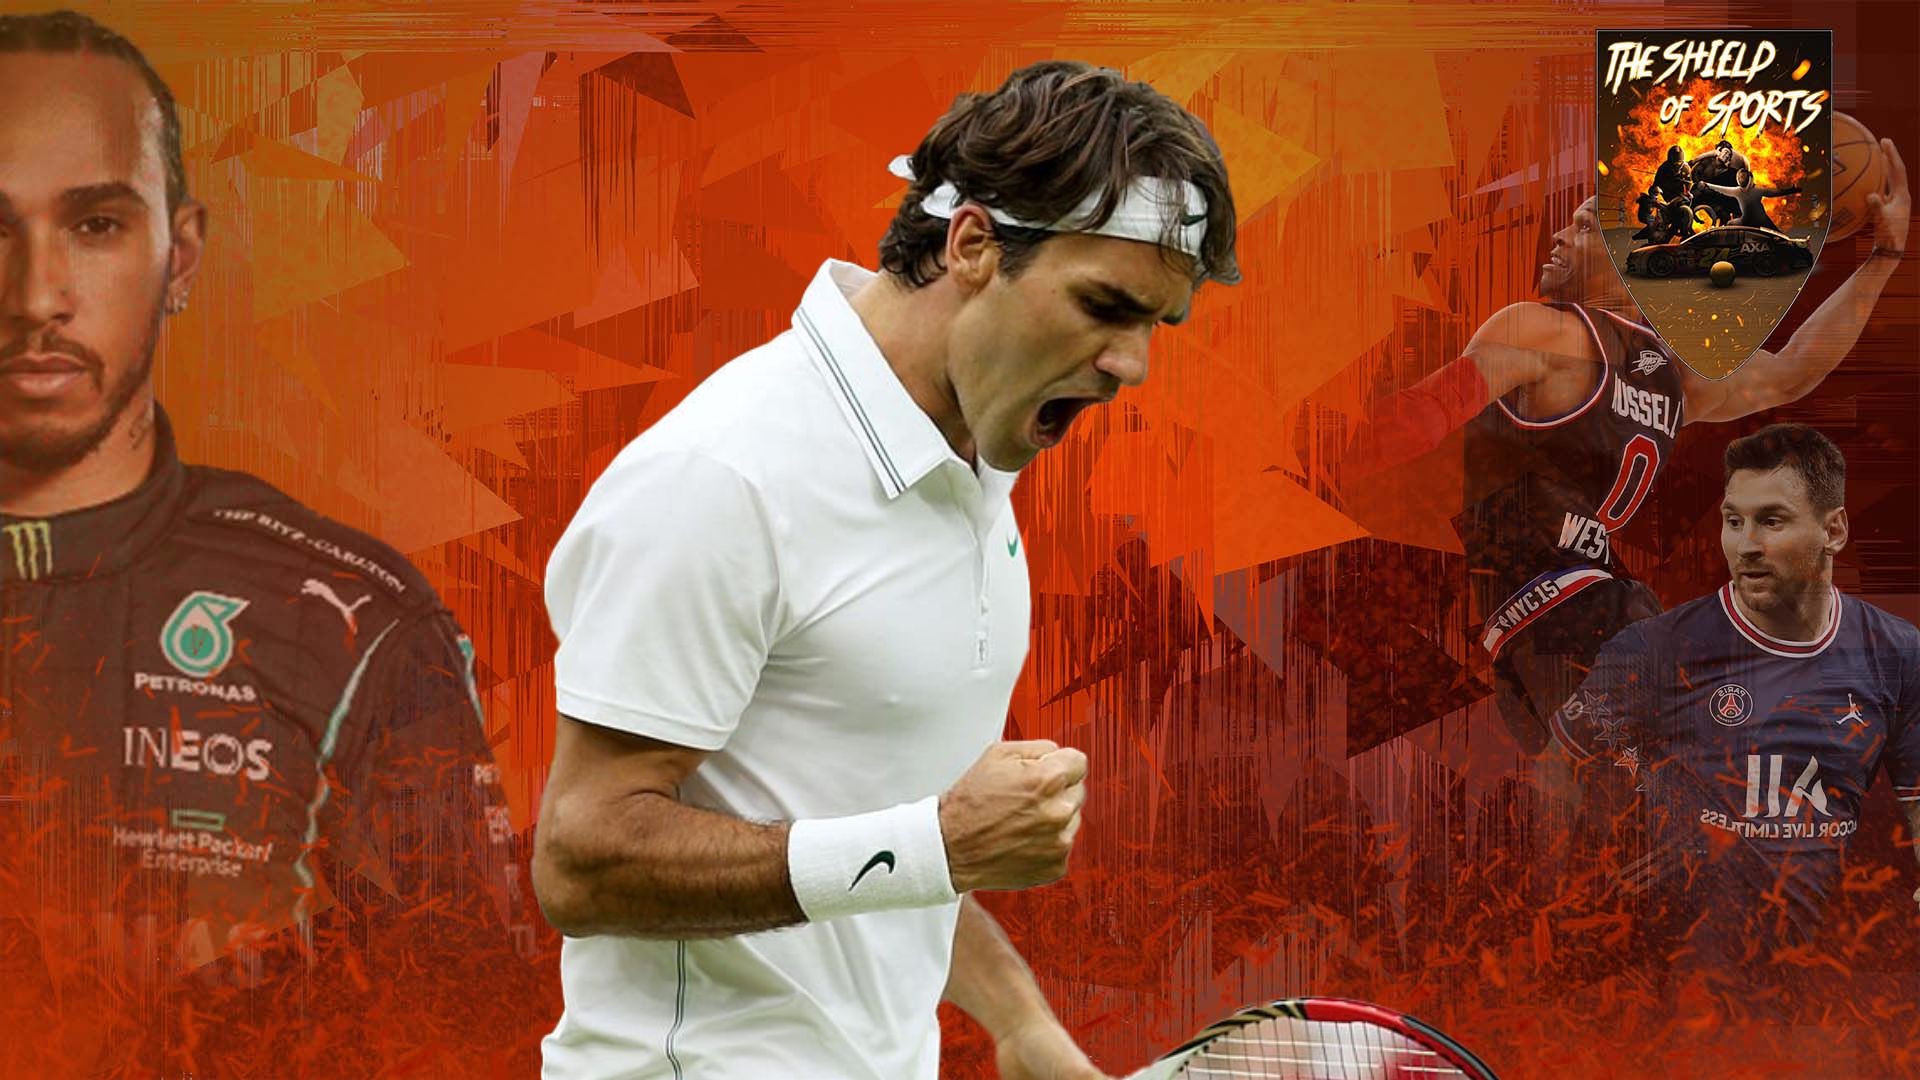 Roger Federer elogiato da John McEnroe